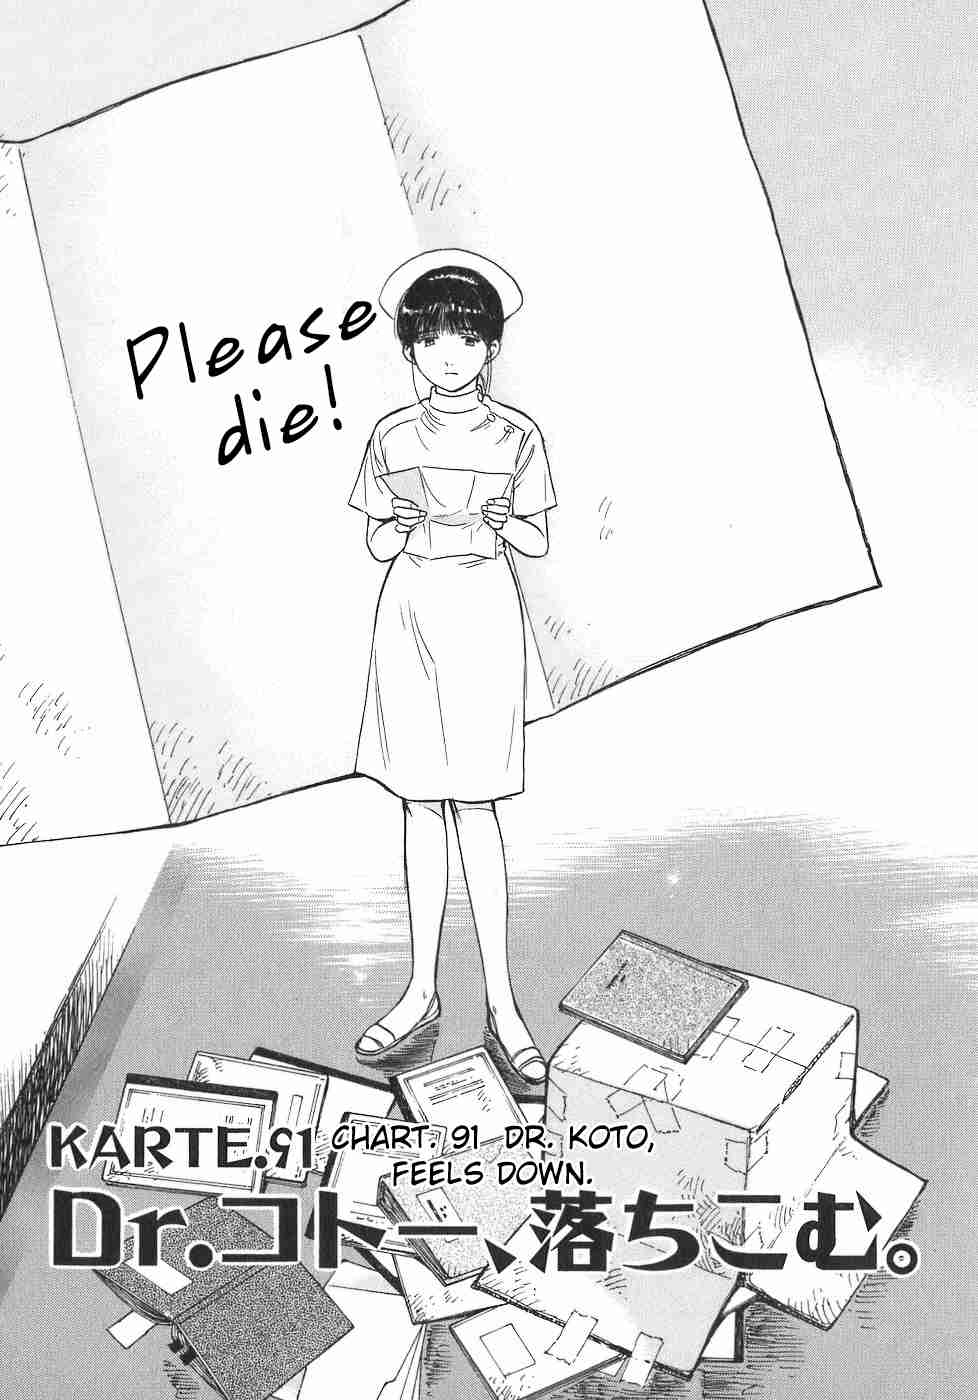 Dr. Koto Shinryoujo Vol. 9 Ch. 91 Dr. Koto Feels Down